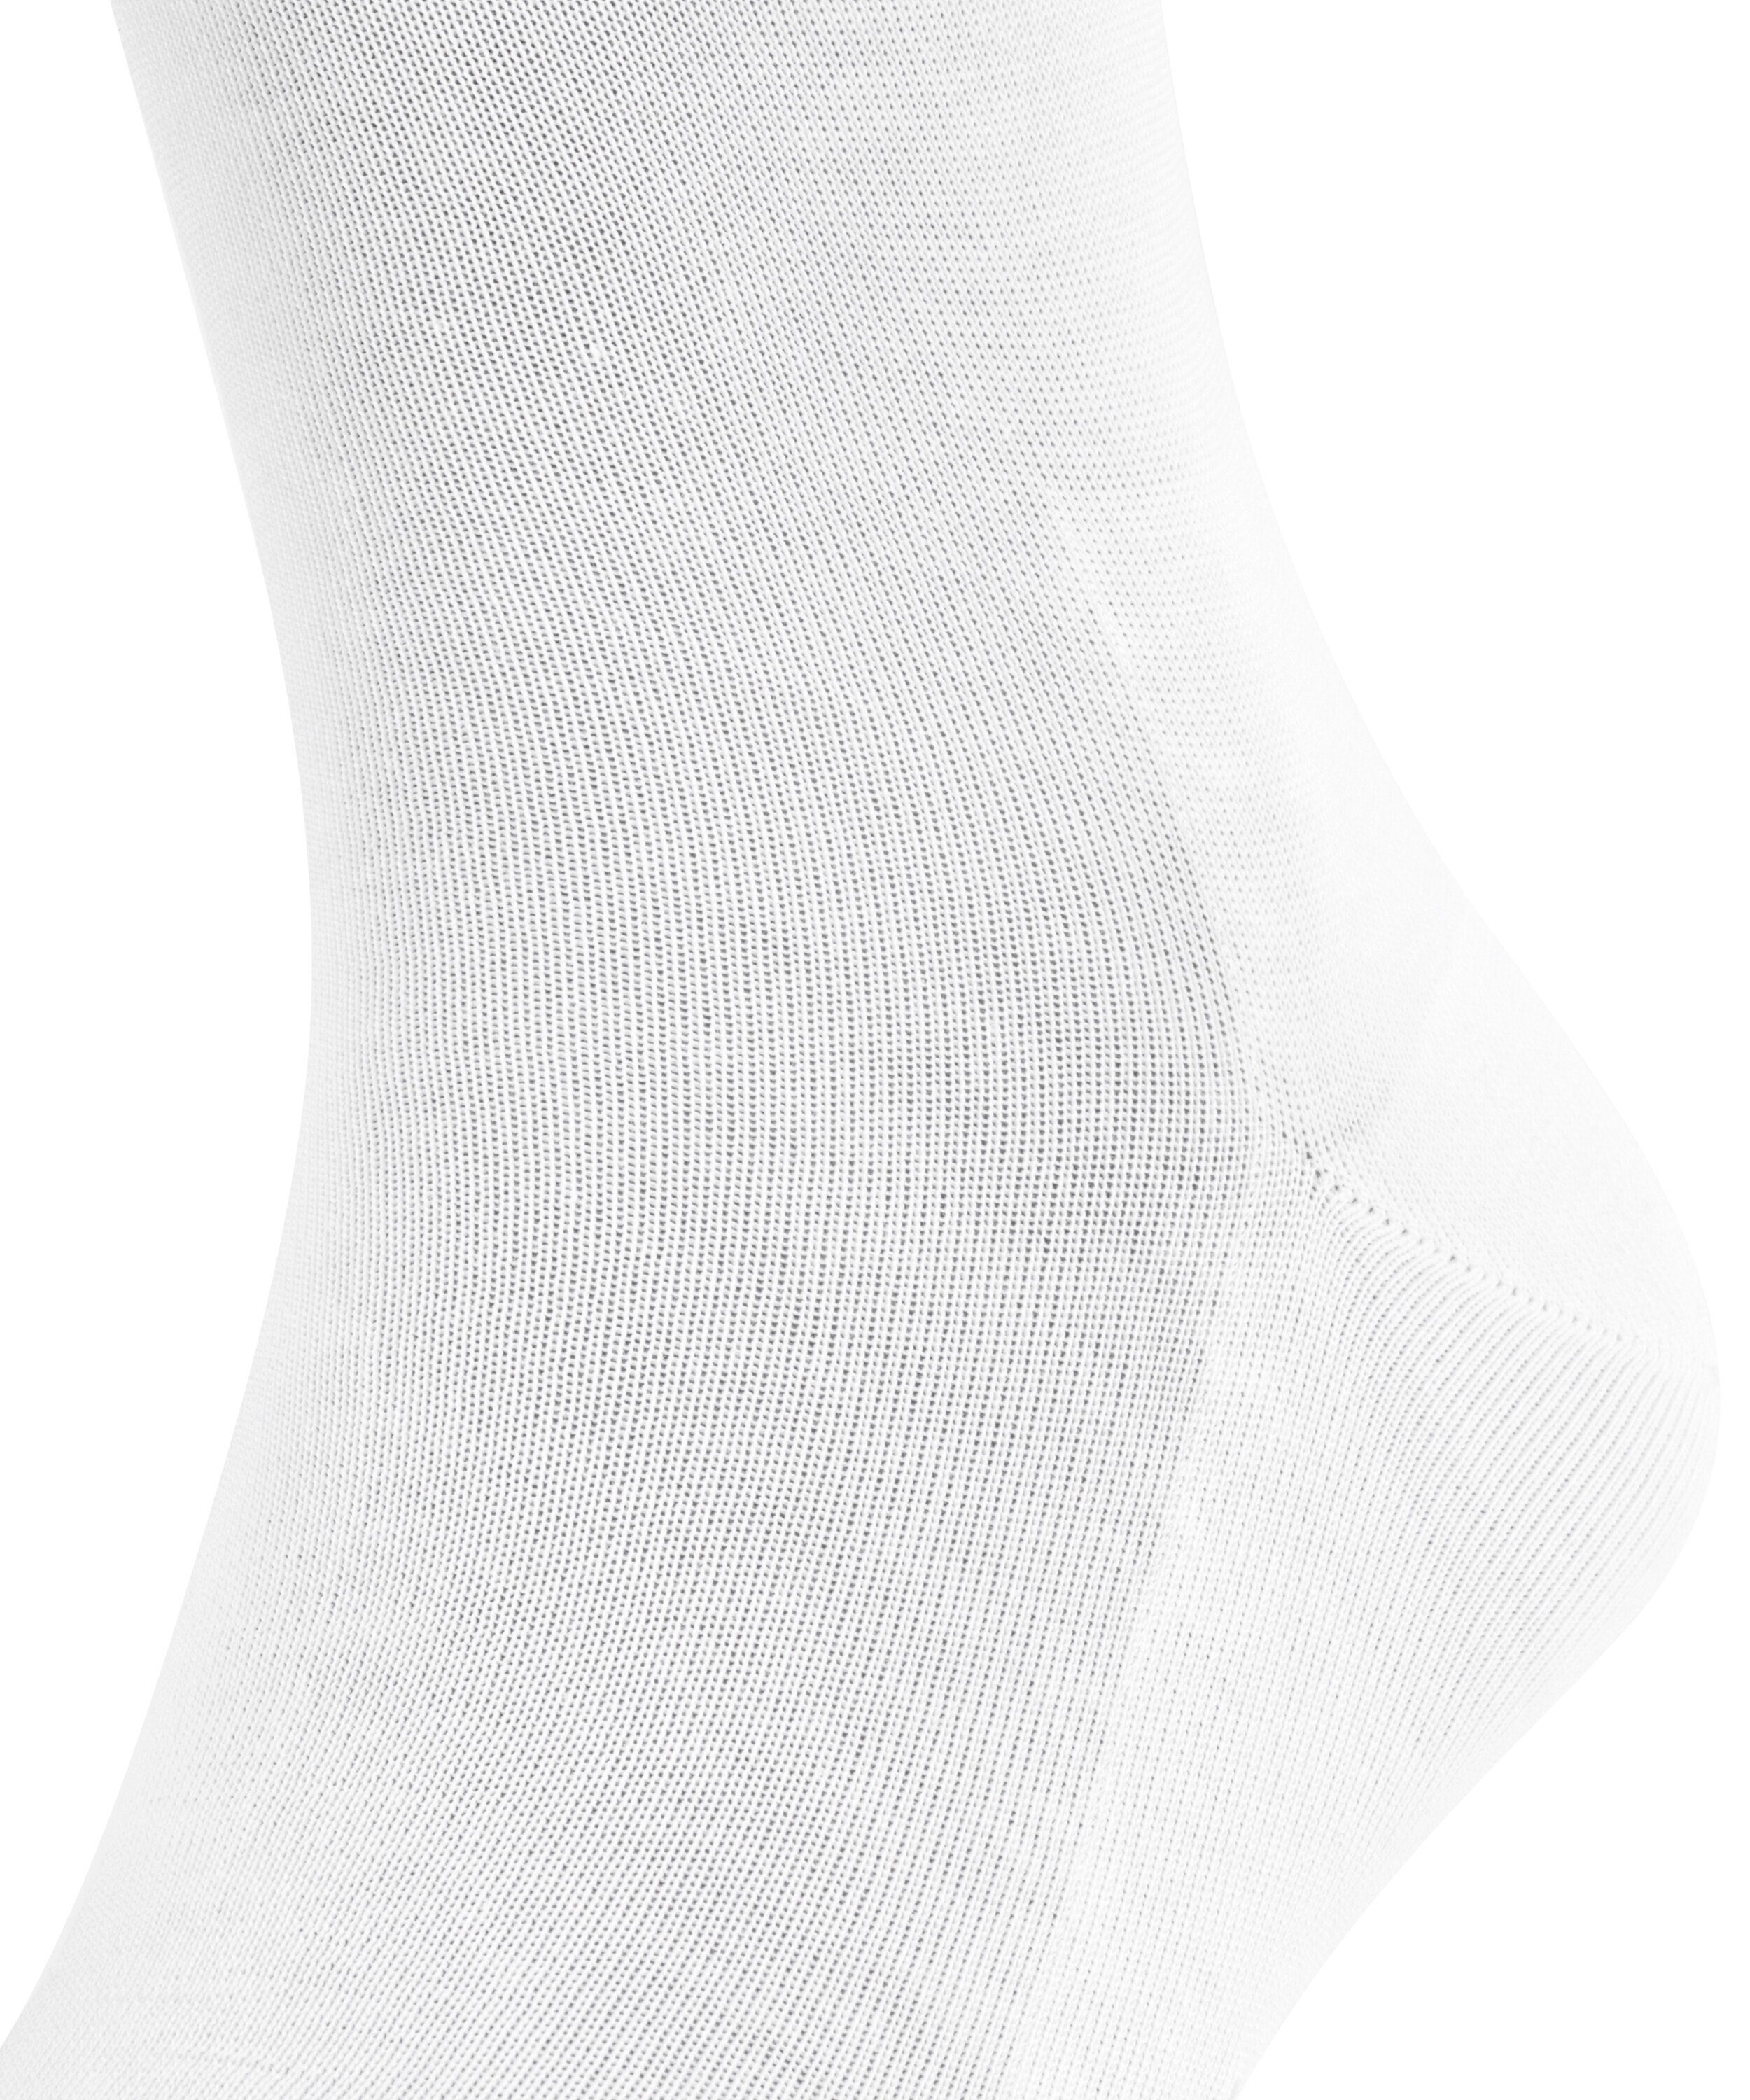 white Tiago FALKE (1-Paar) (2000) Socken